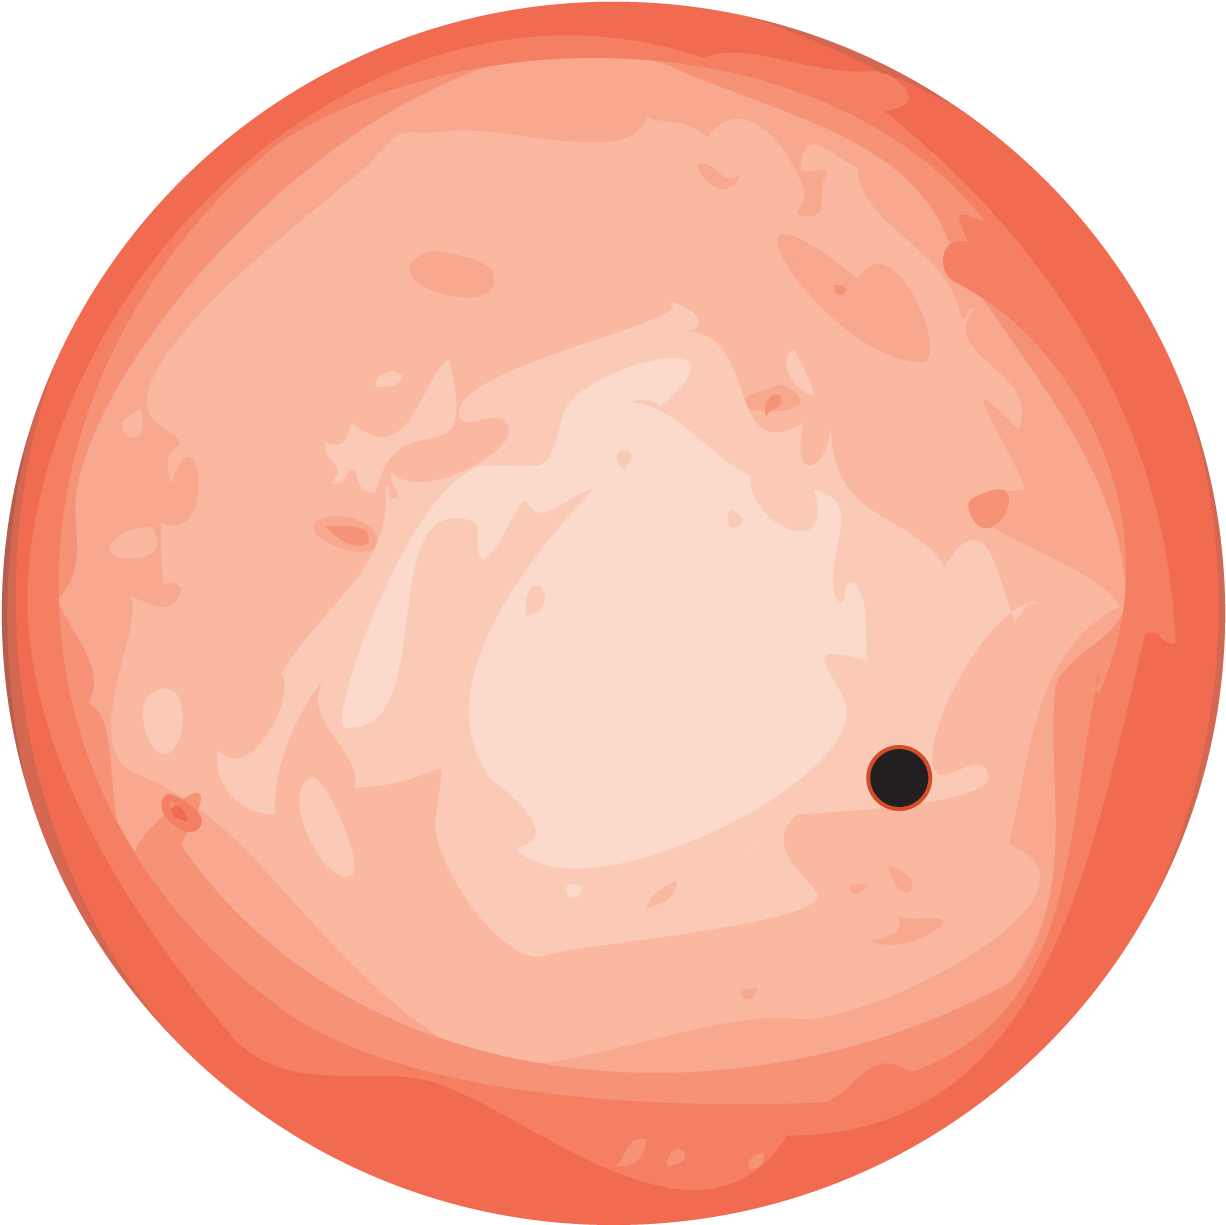 Orange Planet Illustration PNG image